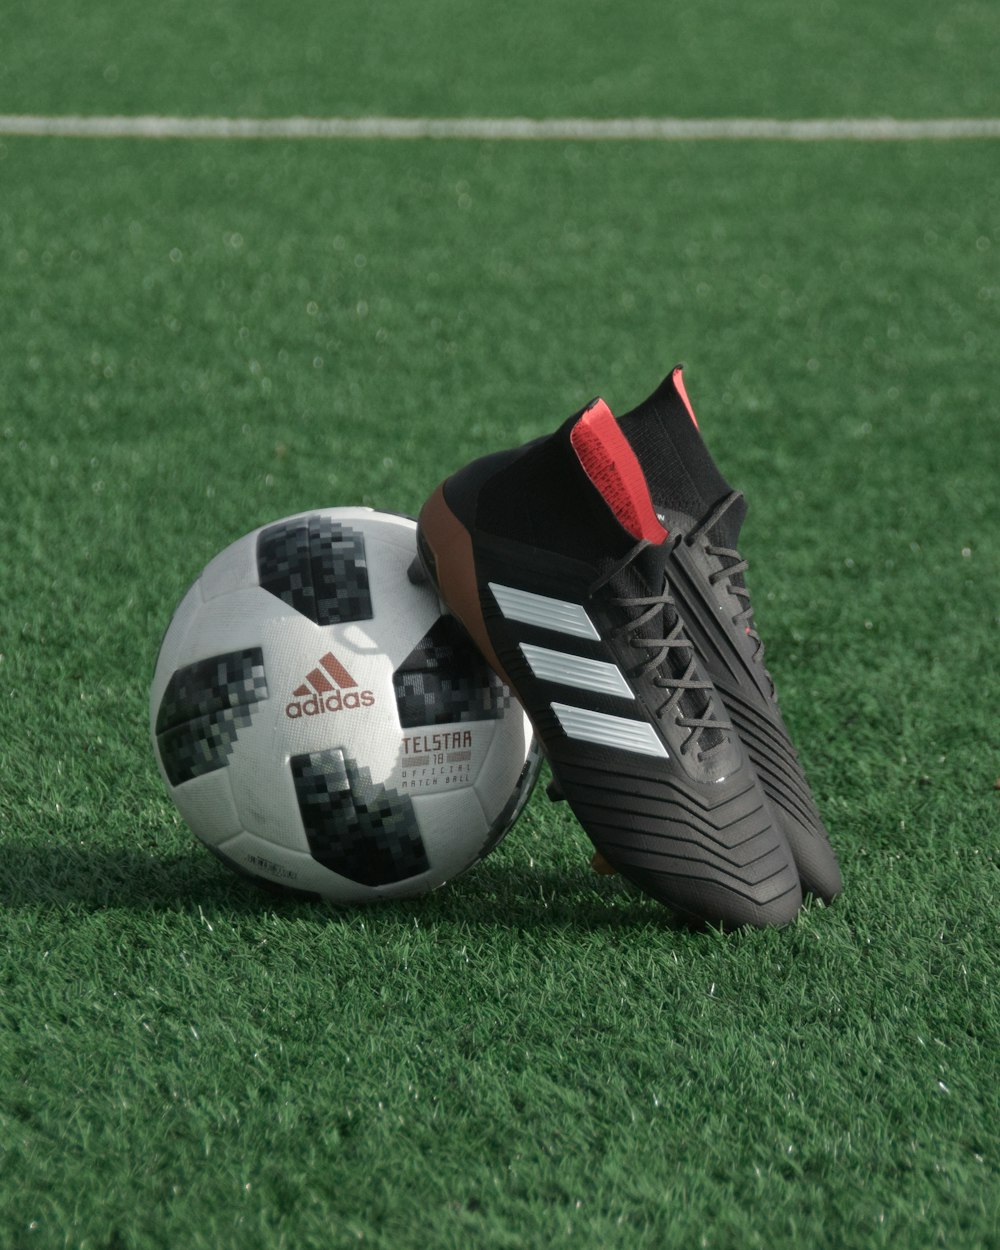 Crampons adidas noirs s’appuient sur un ballon de football adidas blanc et noir sur de l’herbe verte